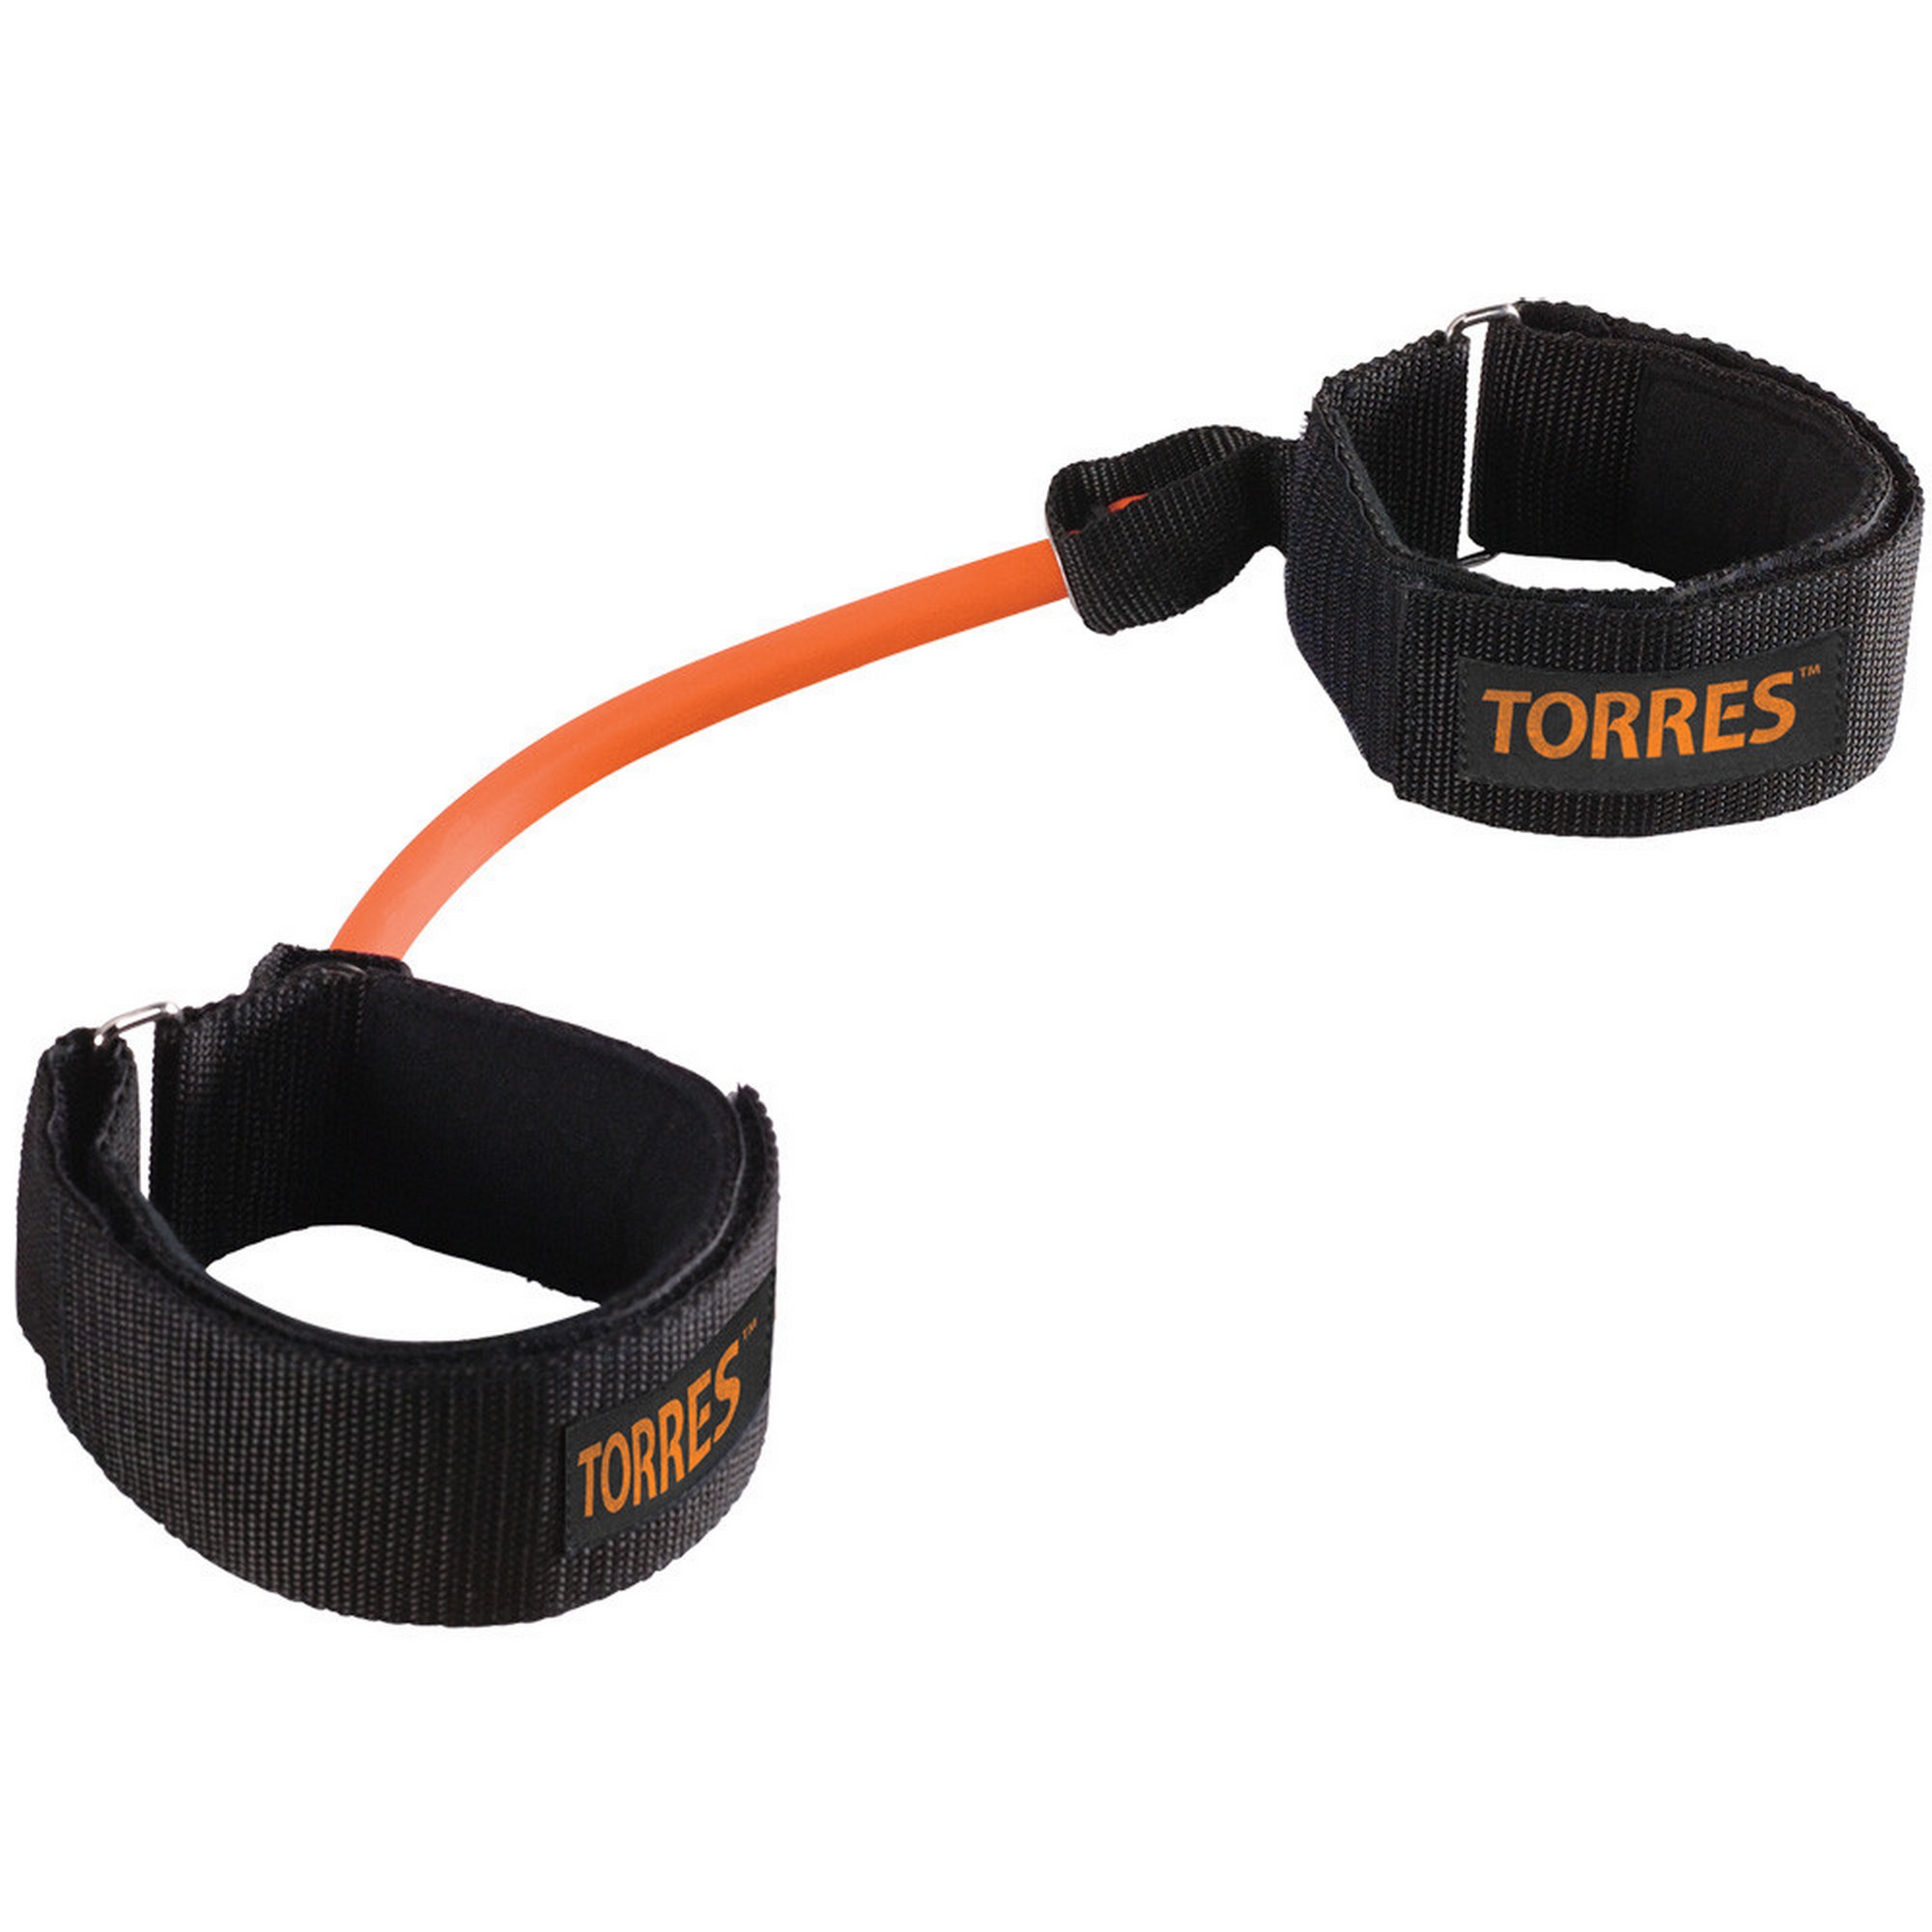 Эспандер Torres латеральный TPR AL0050 оранжево-черный